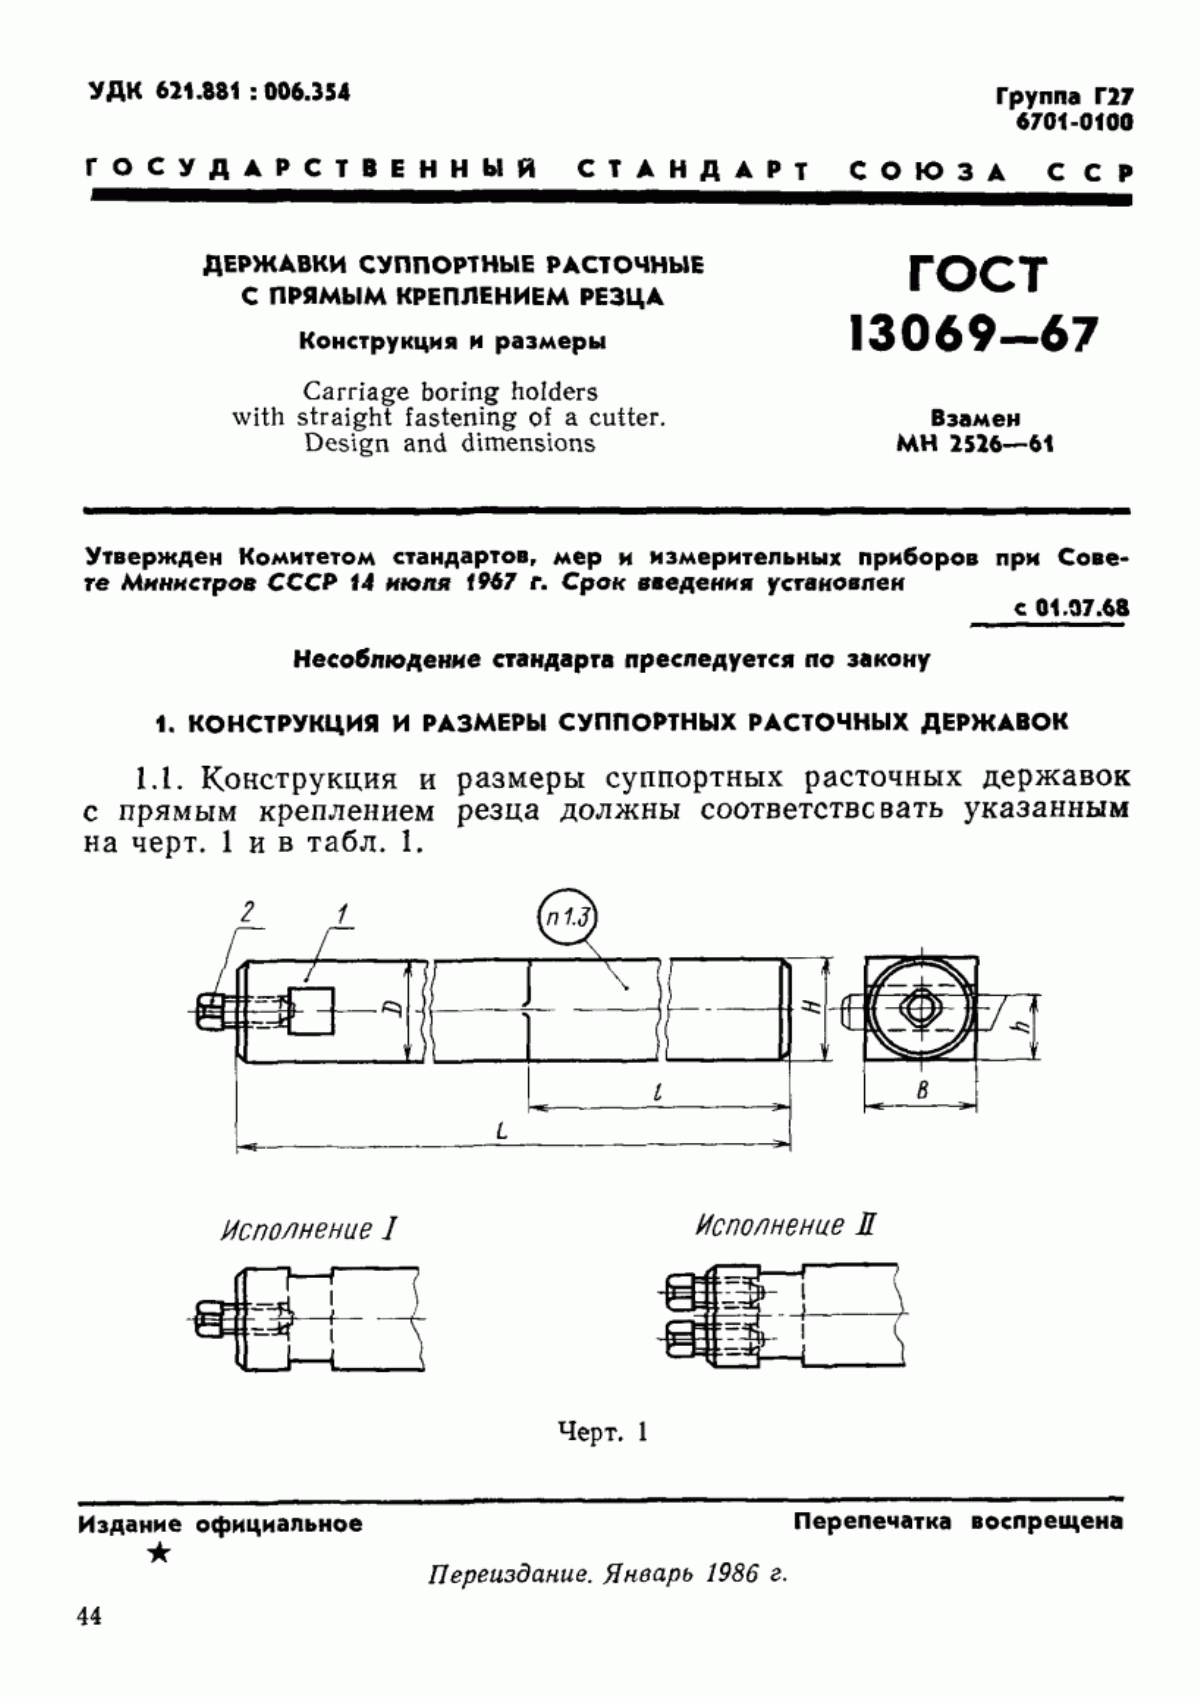 ГОСТ 13069-67 Державки суппортные расточные с прямым креплением резца. Конструкция и размеры